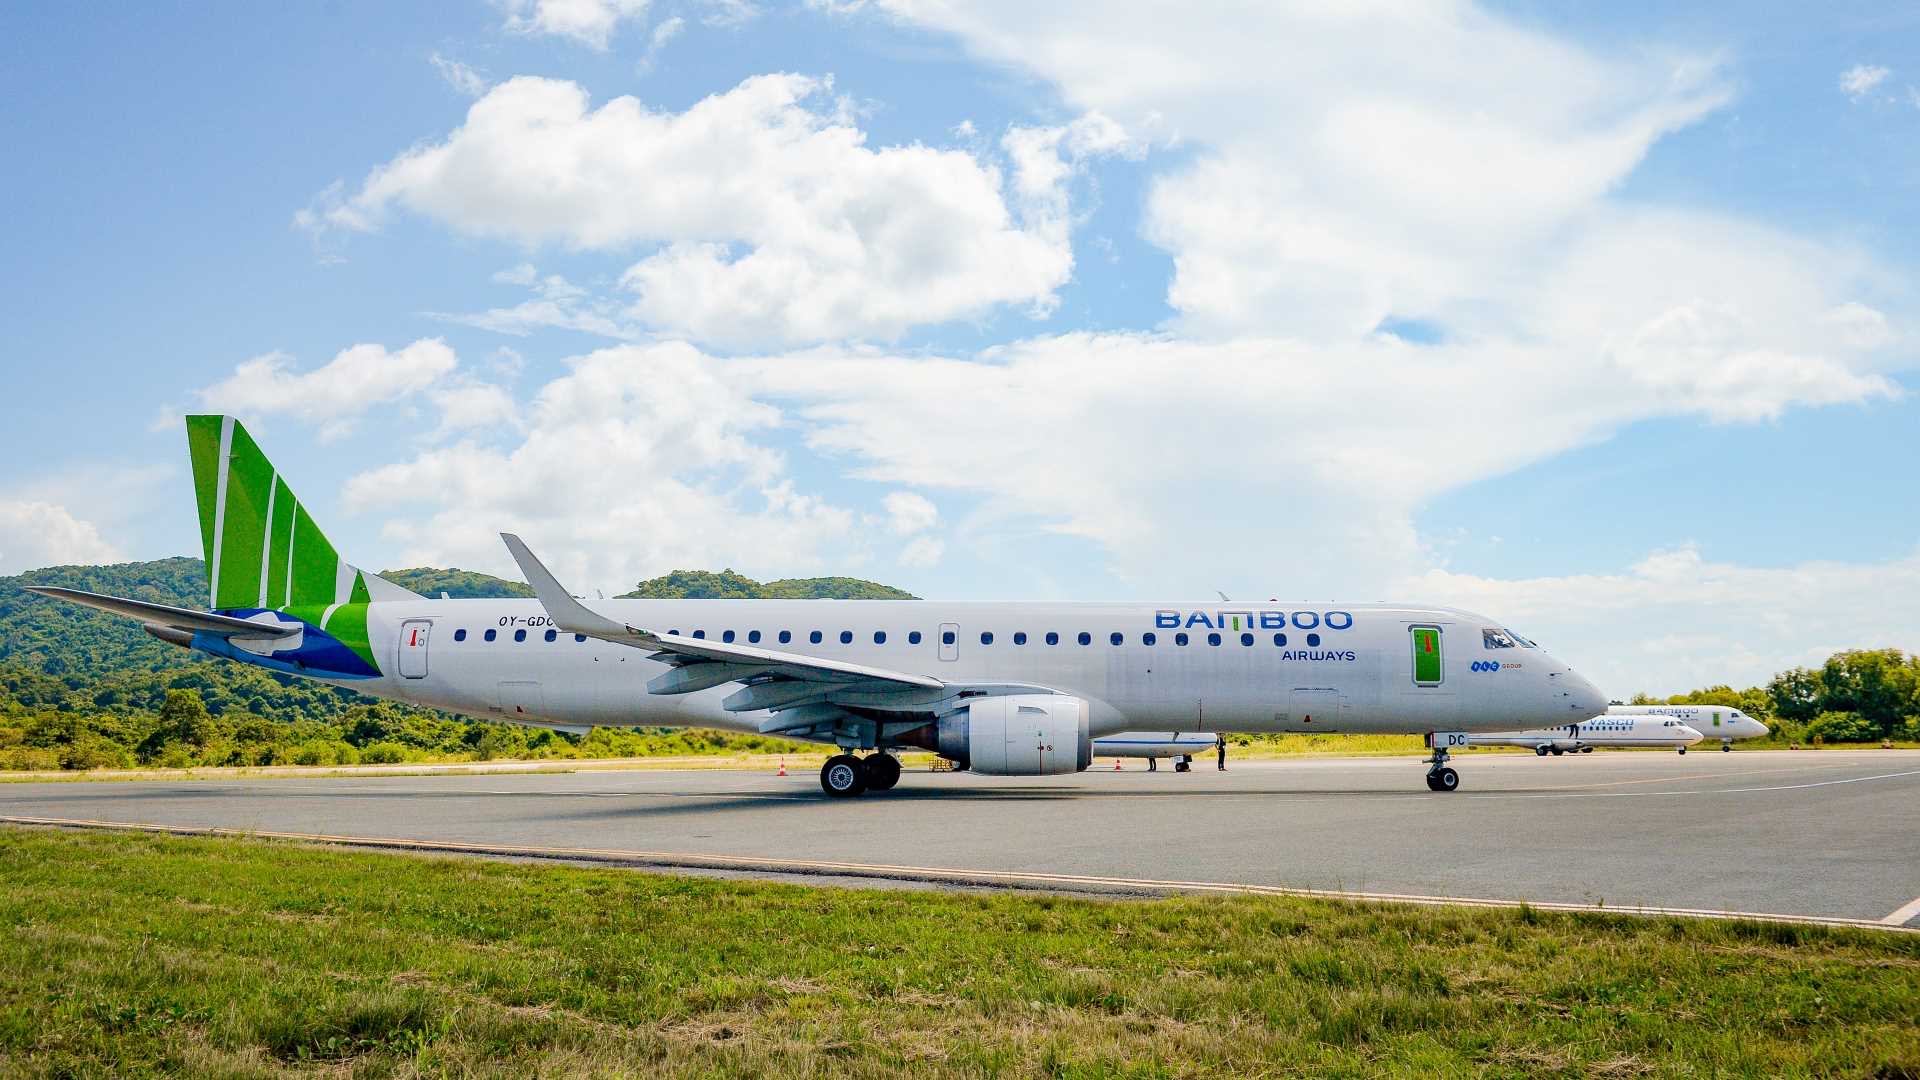 Đội bay Embraer cho phép Bamboo Airways phát triển mạnh mẽ các đường bay ngách tới nhiều sân bay địa phương vốn hạn chế về điều kiện cất/hạ cánh